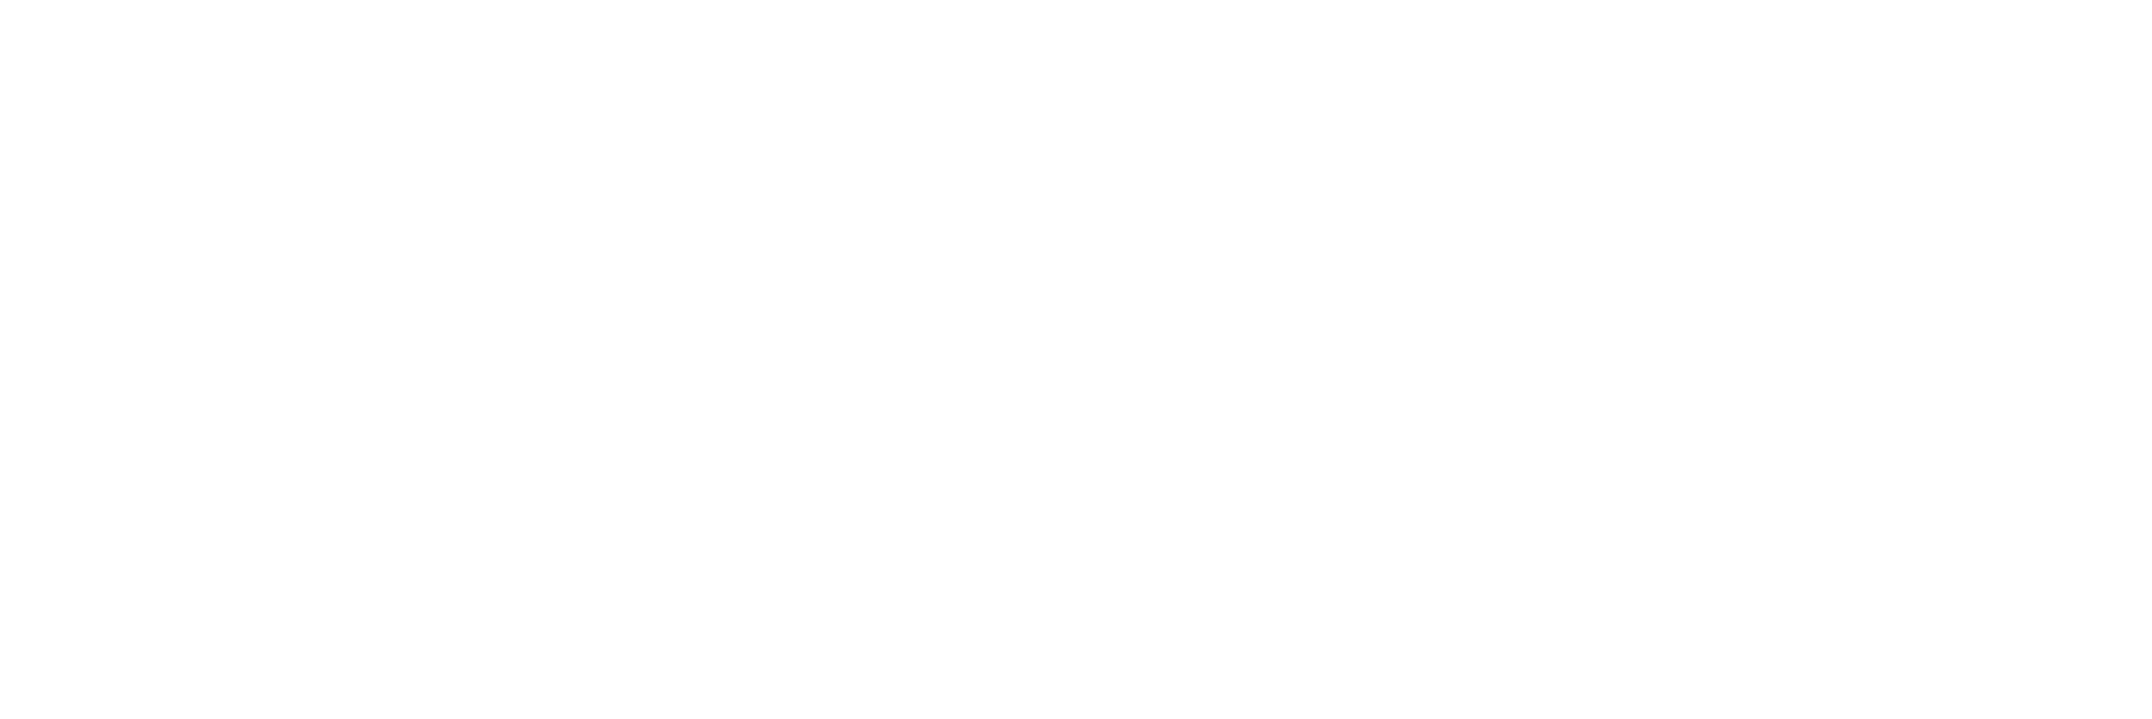 Filgueiras e Pernanchini Law Office - Logotipo - v02 - Transparente_02